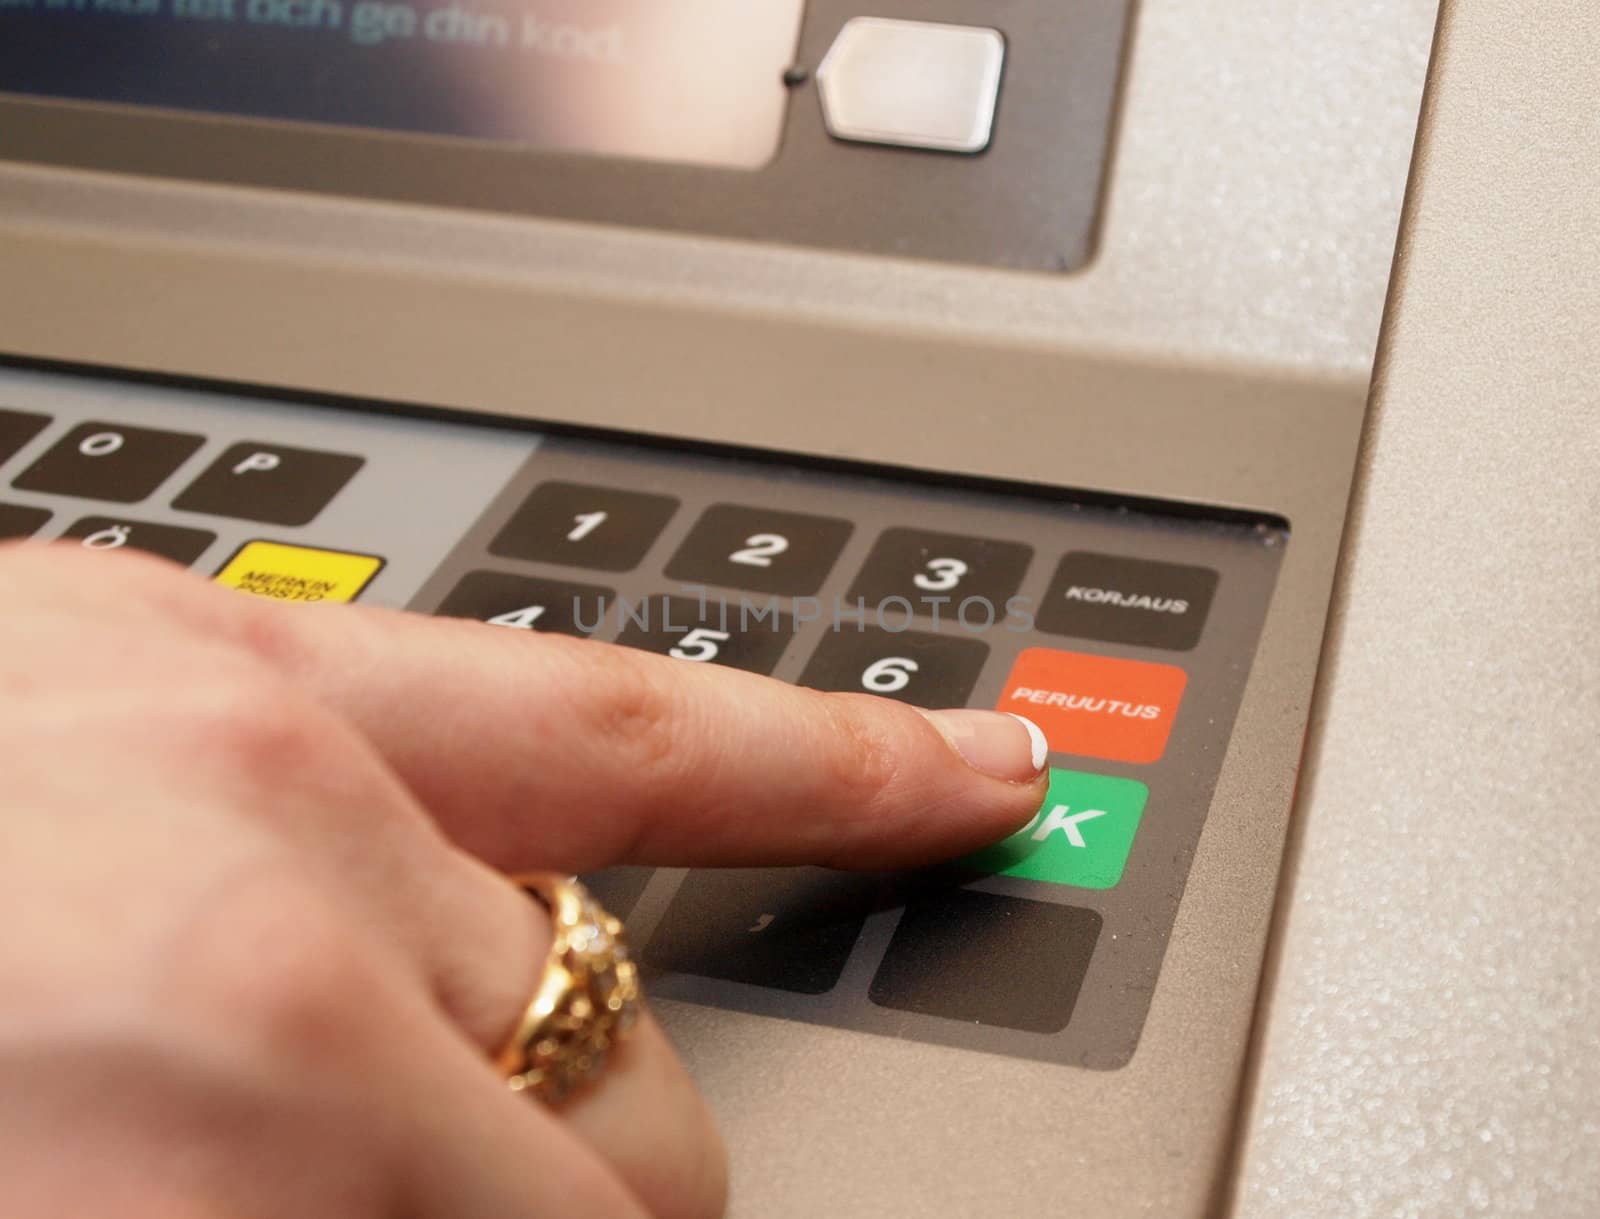 ATM dials - someone pressing OK button